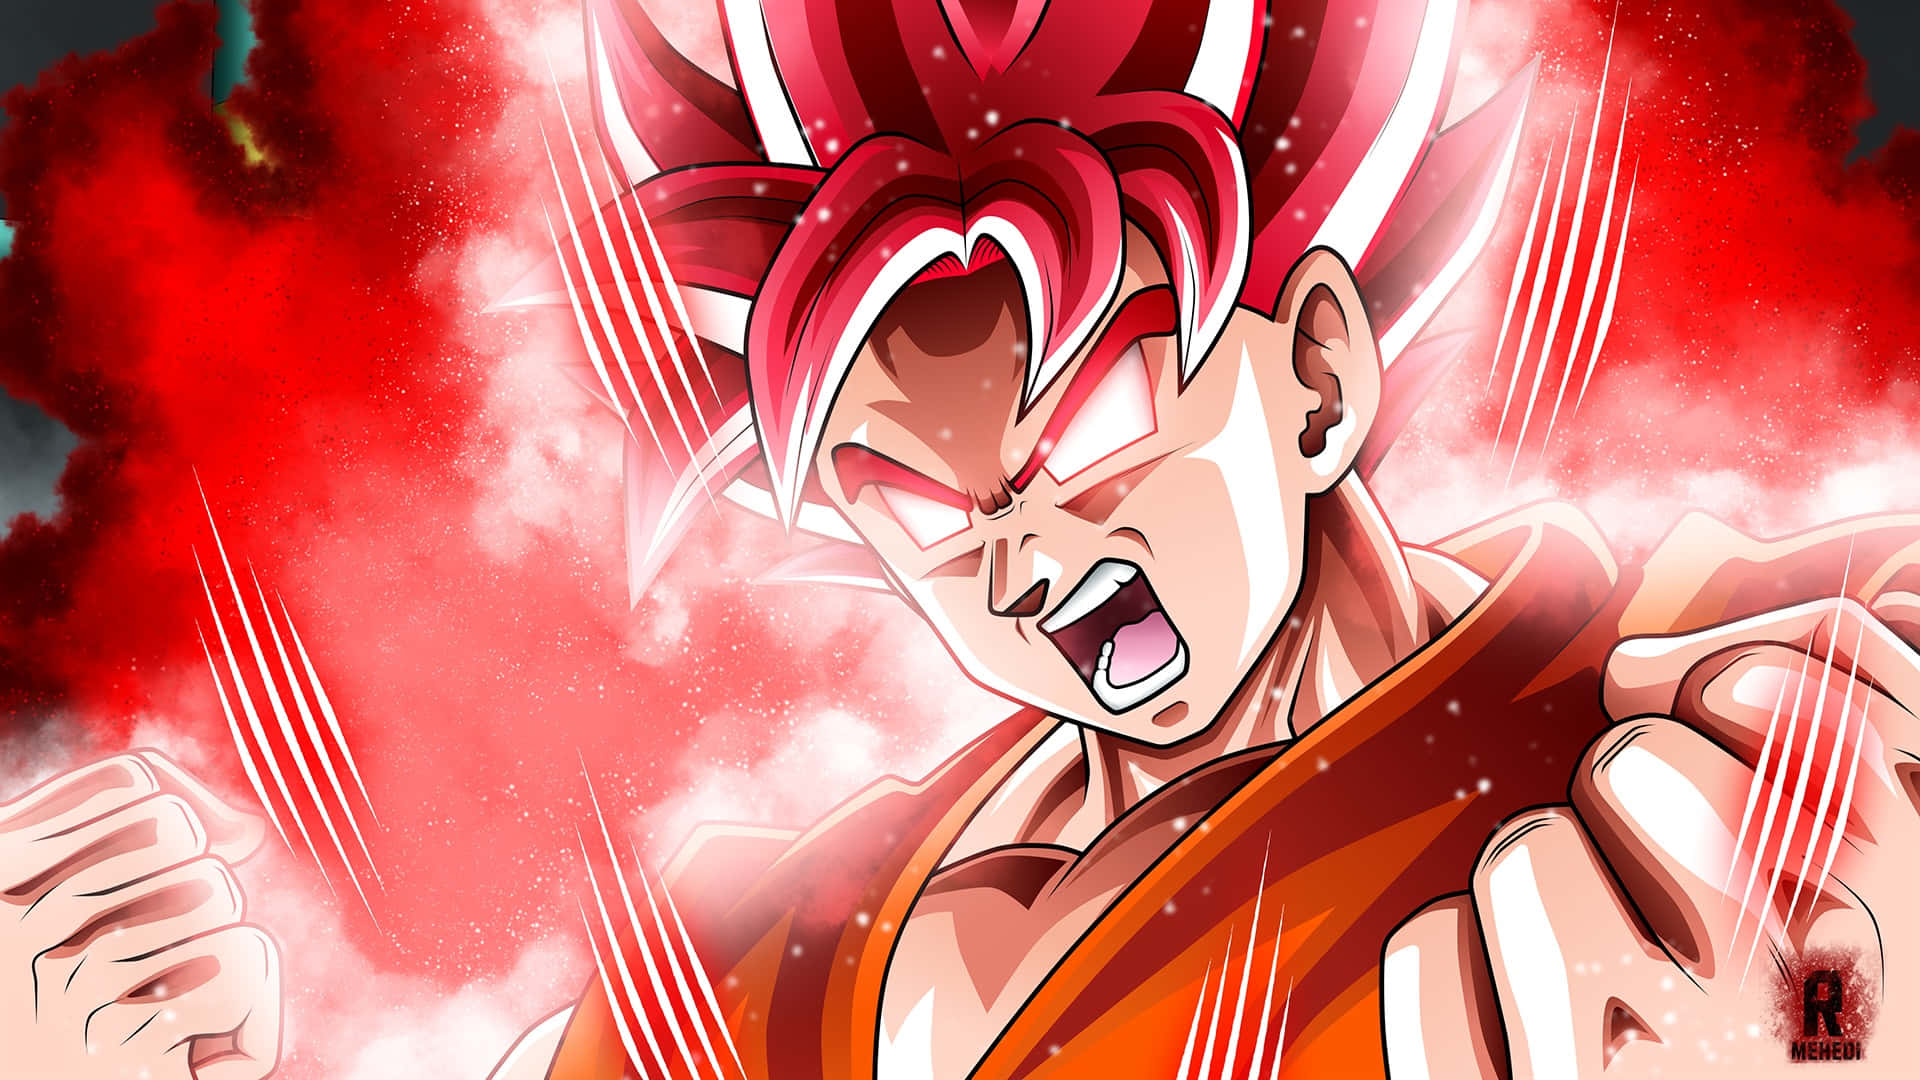 Imagemdo Goku Brilhando Em Vermelho.